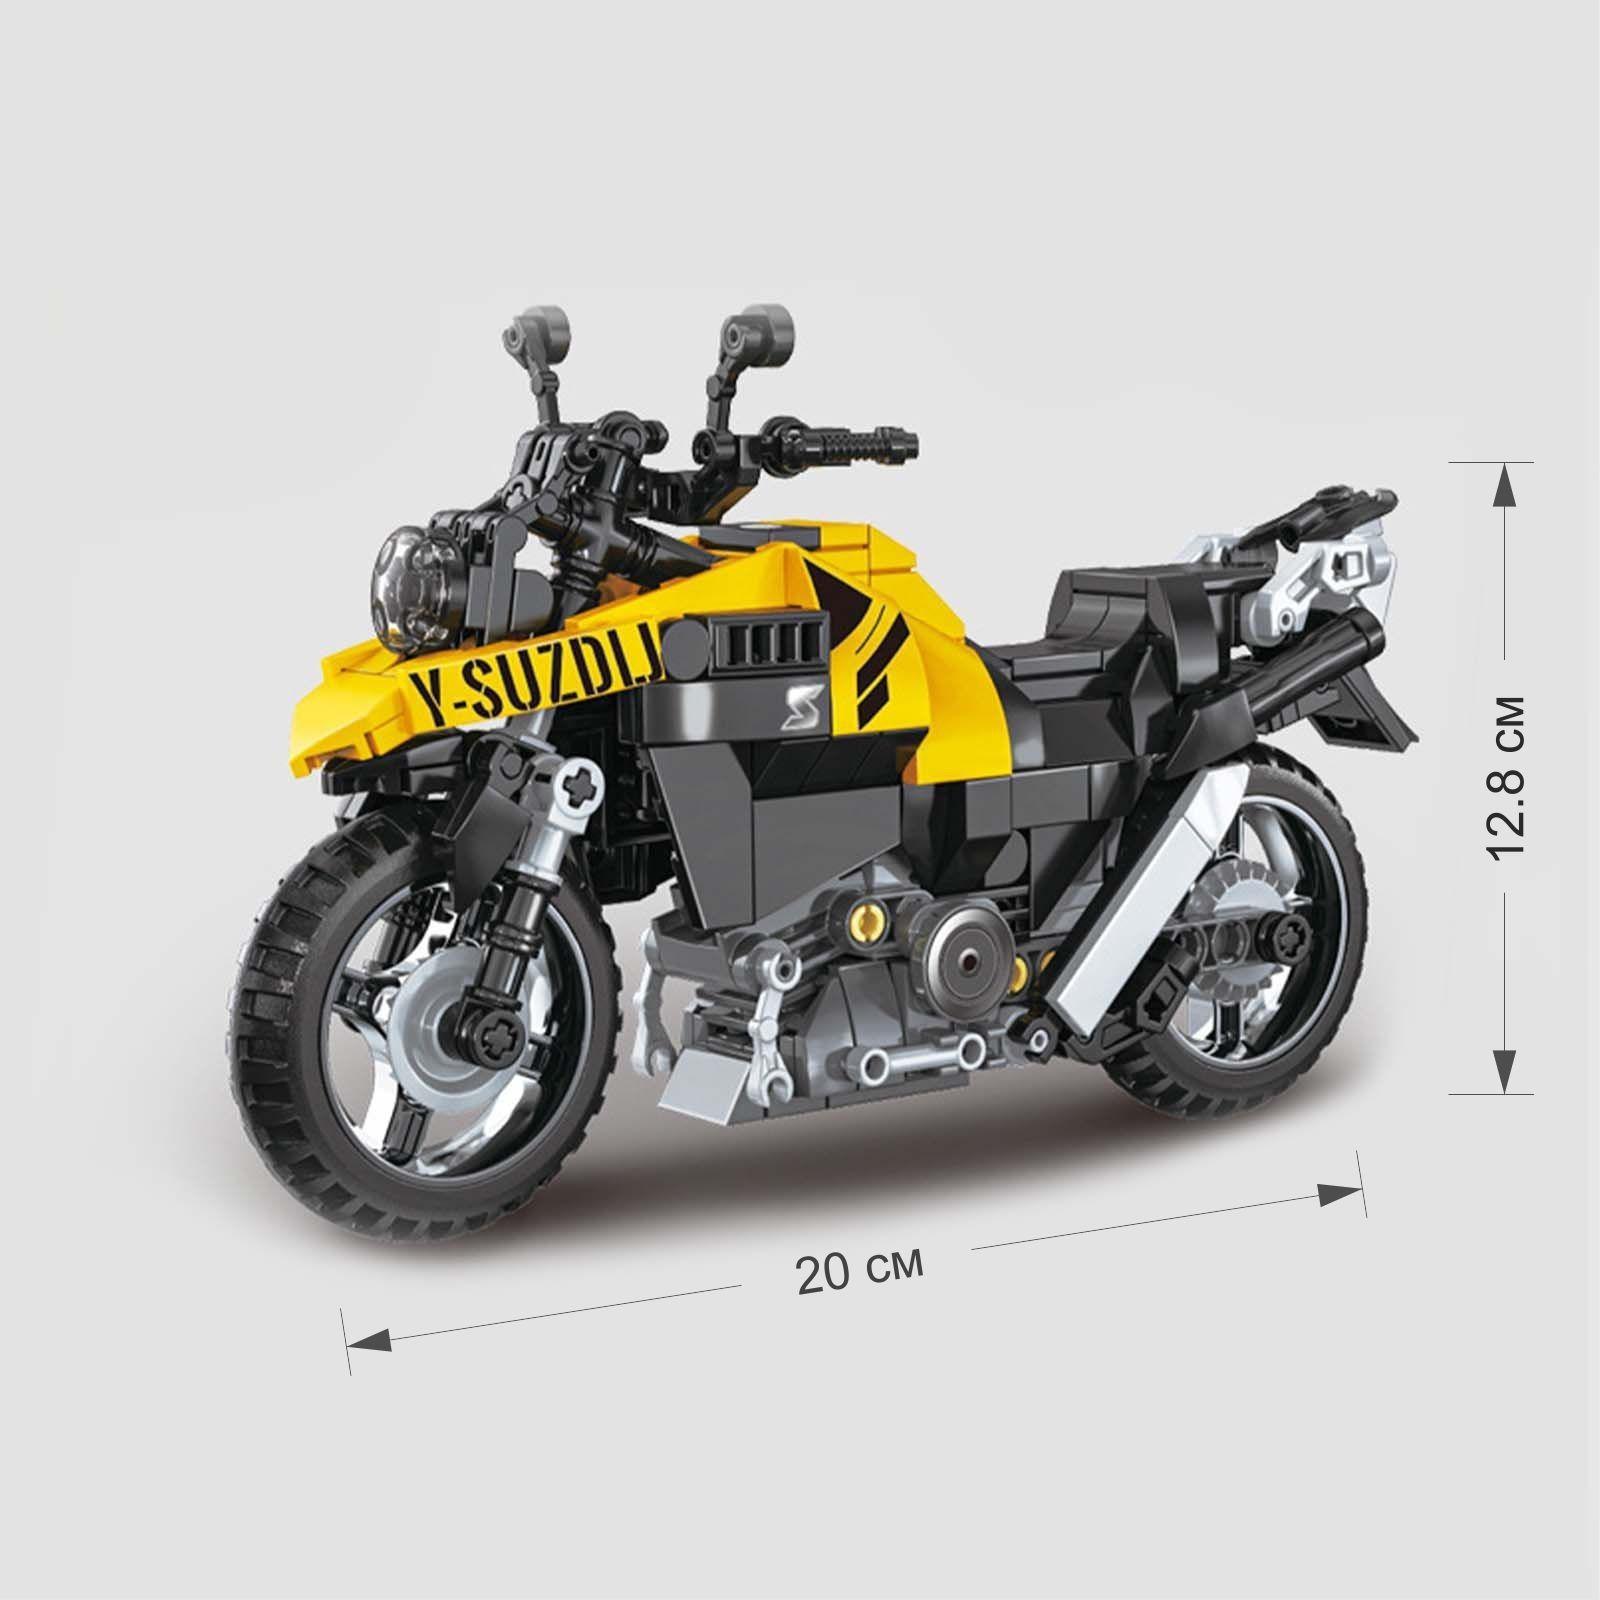 Конструктор Kazi «Спортивный мотоцикл» KY6130 / 314 деталей